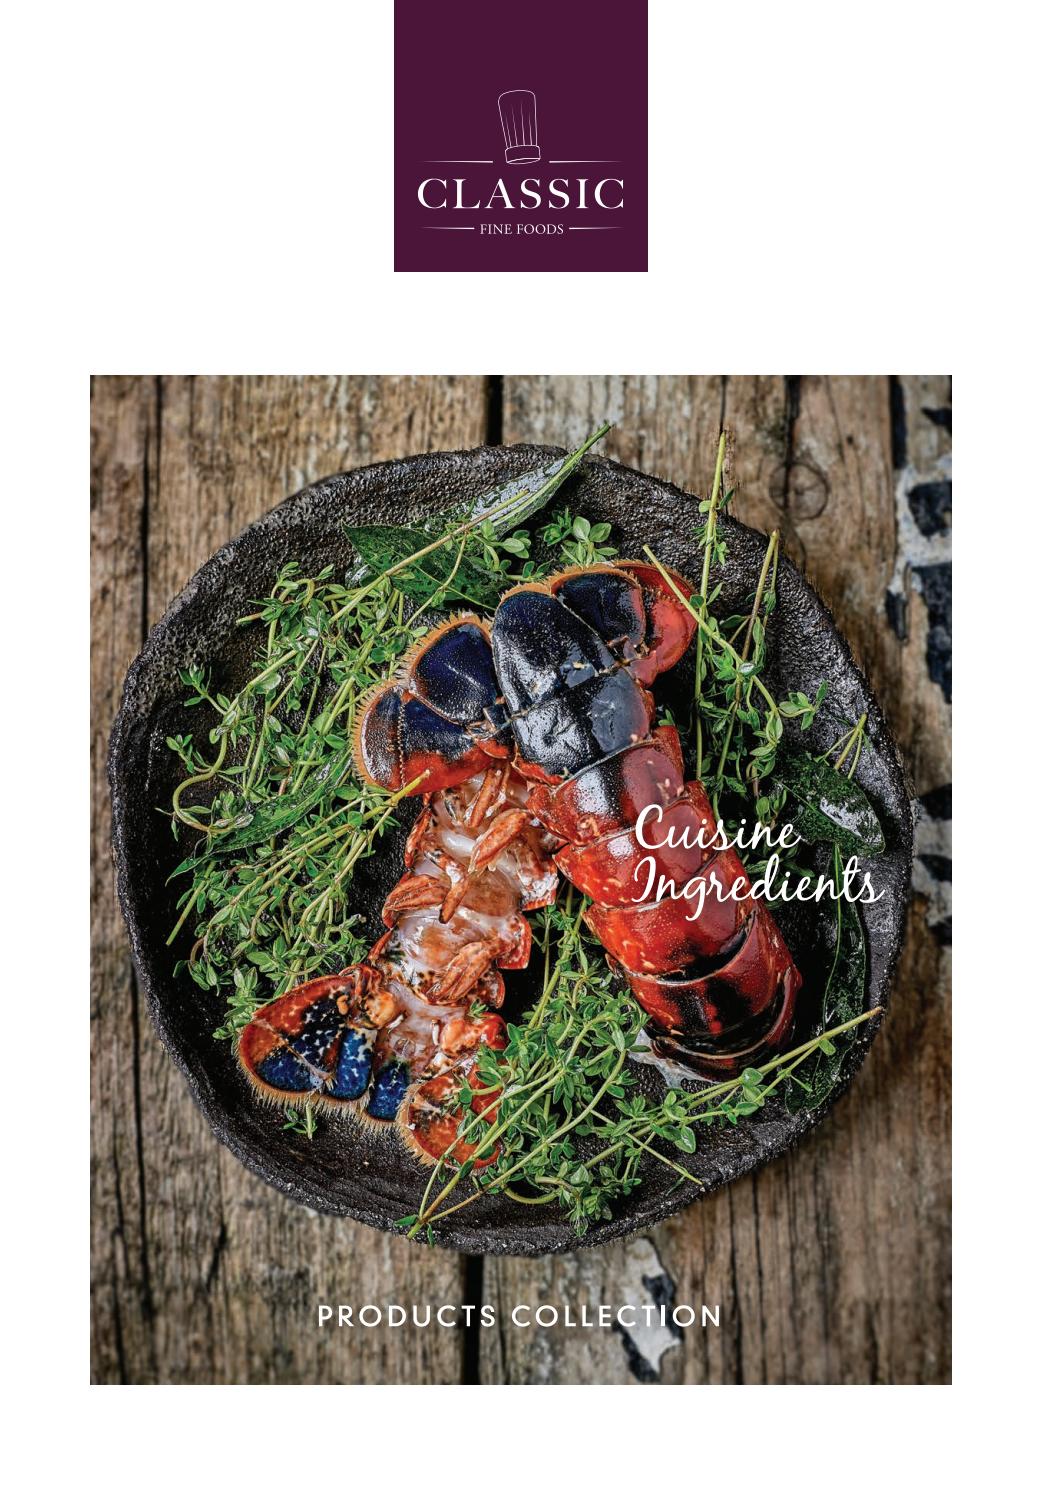 Salon De Jardin Palette Best Of Cff Sg Cuisine Ingre Nts Catalogue 2019 by Classic